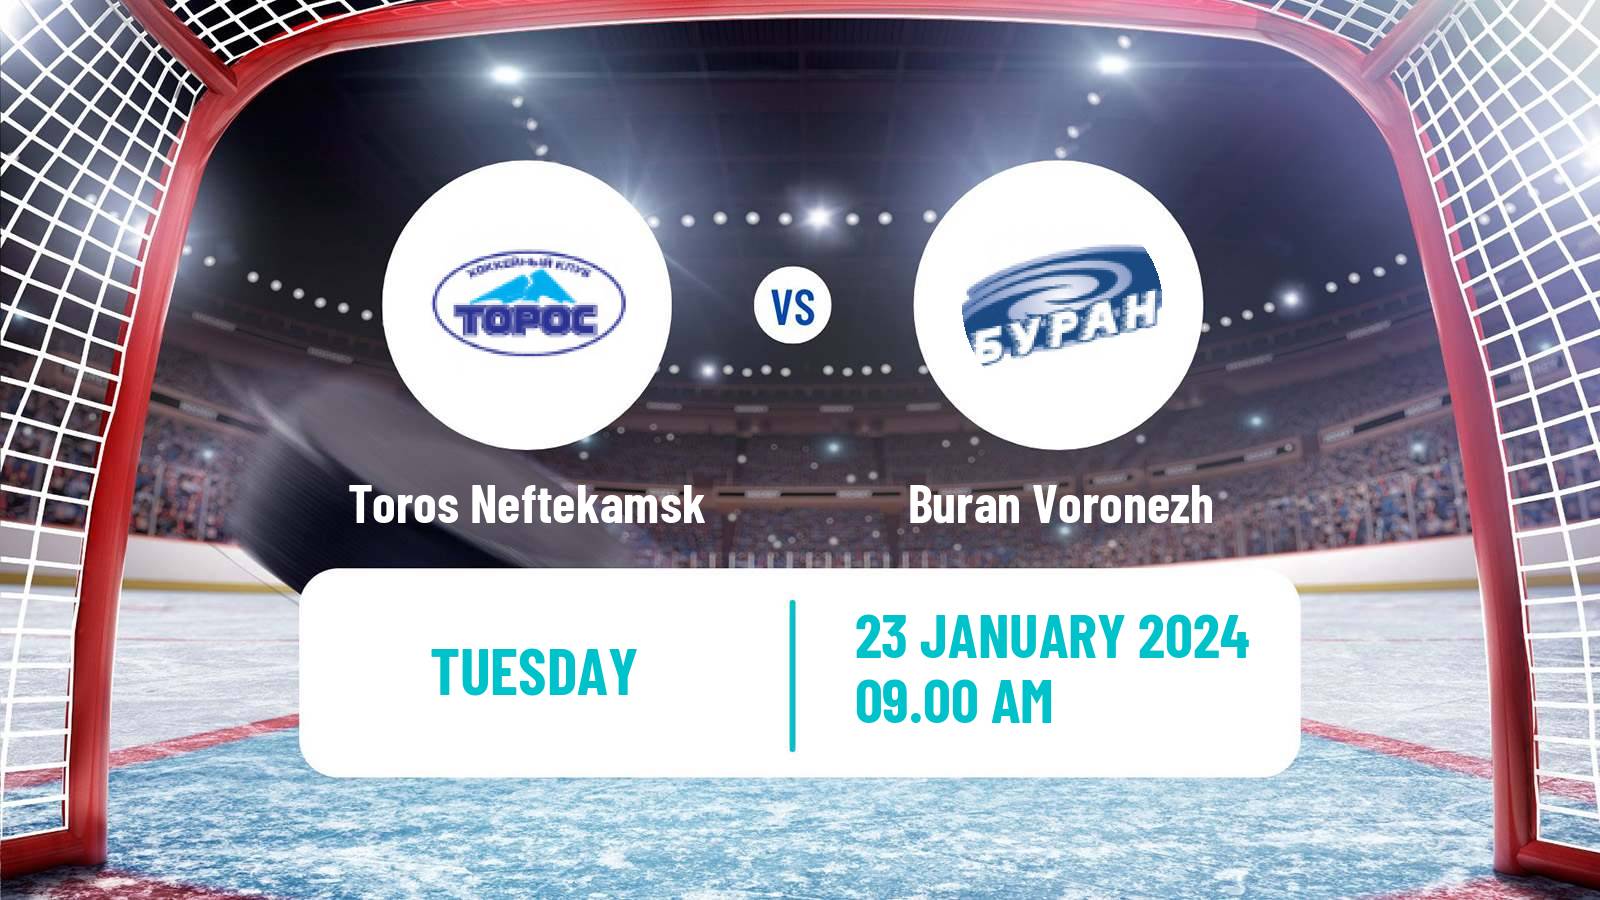 Hockey VHL Toros Neftekamsk - Buran Voronezh